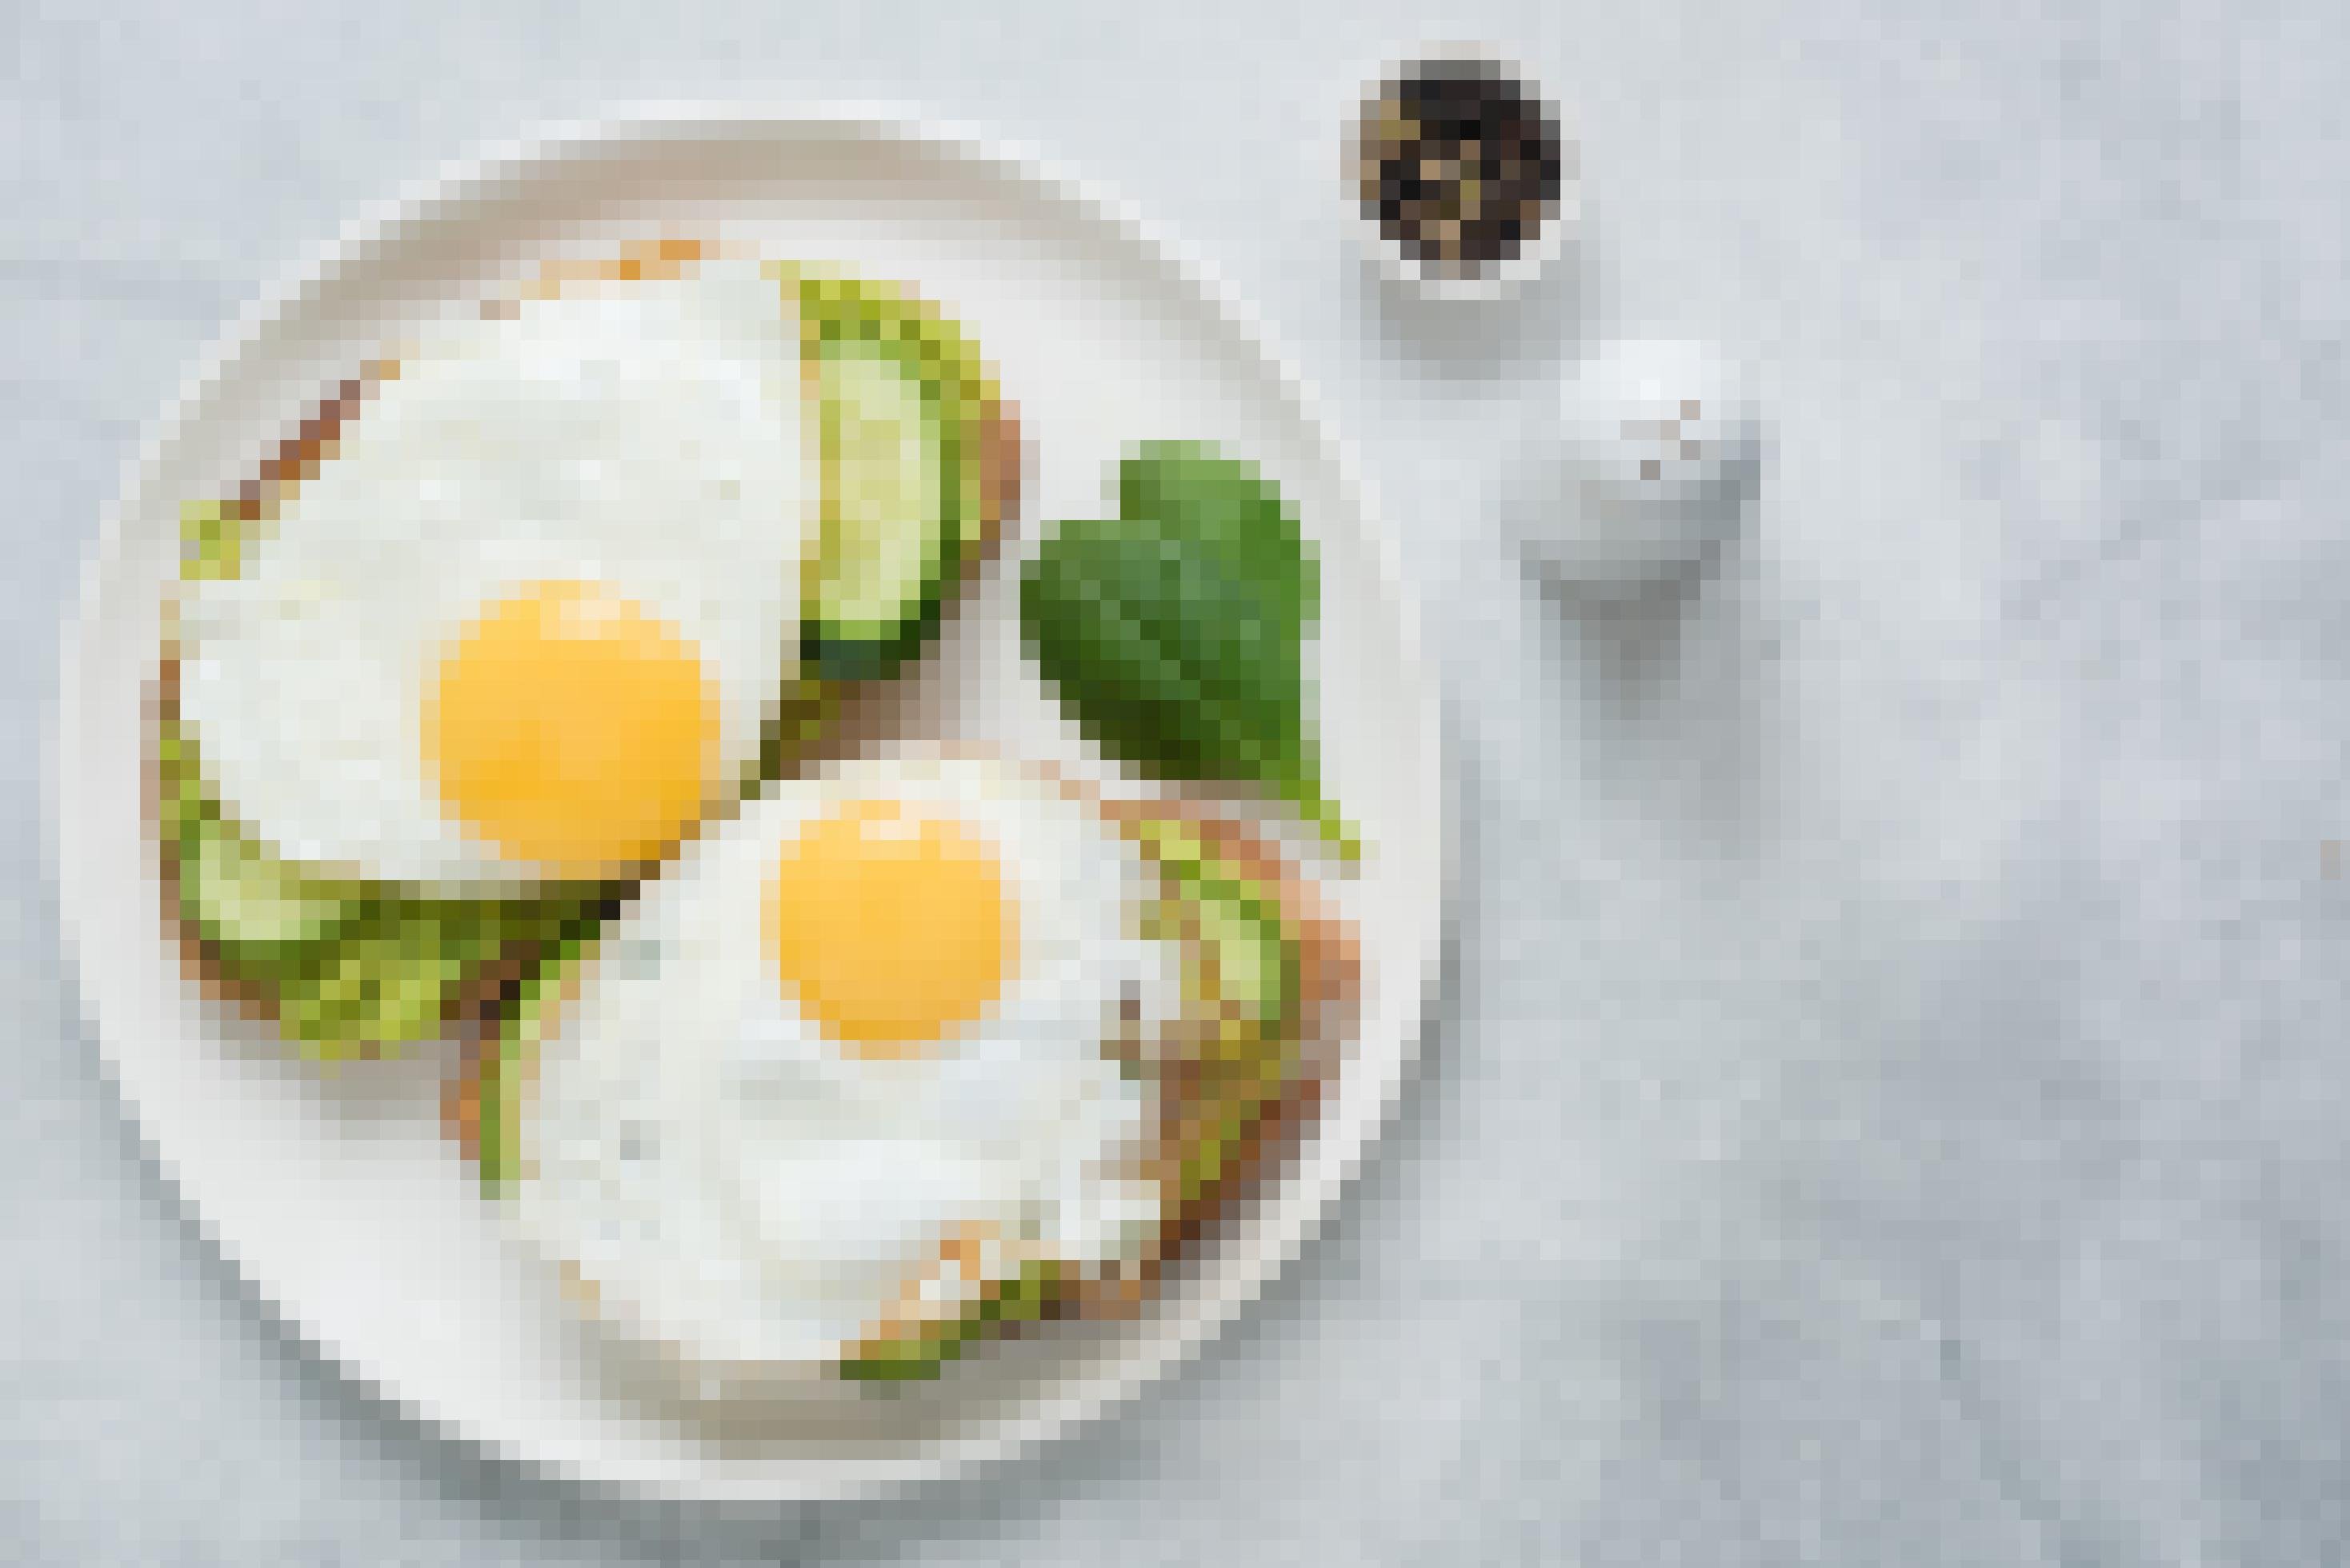 Draufsicht. Zwei Toasts mit Avocado, Gurke und Ei auf weißem Teller vor grauem Betonhintergrund.